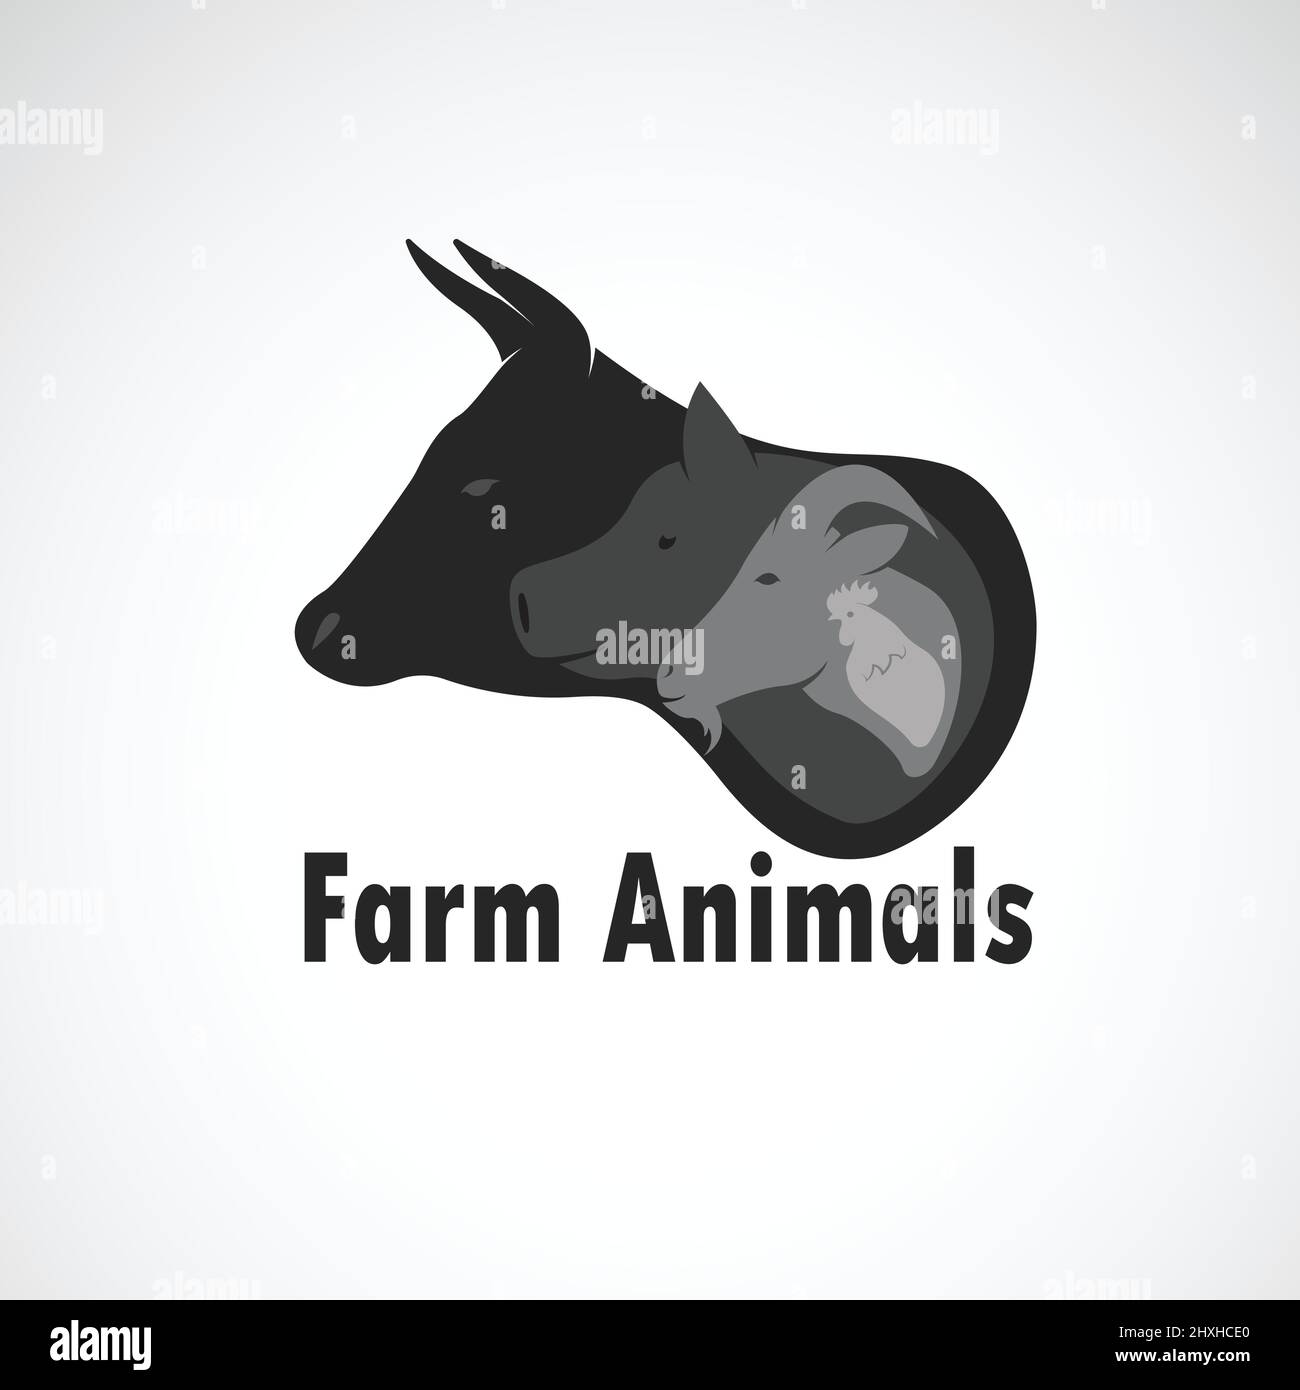 Vektor-Gruppe von Nutztieren Design auf weißem Hintergrund., Kuh, Schaf, Schwein, Huhn. Logo Tier. Leicht editierbare Vektorgrafik mit Ebenen. Tierzucht Stock Vektor